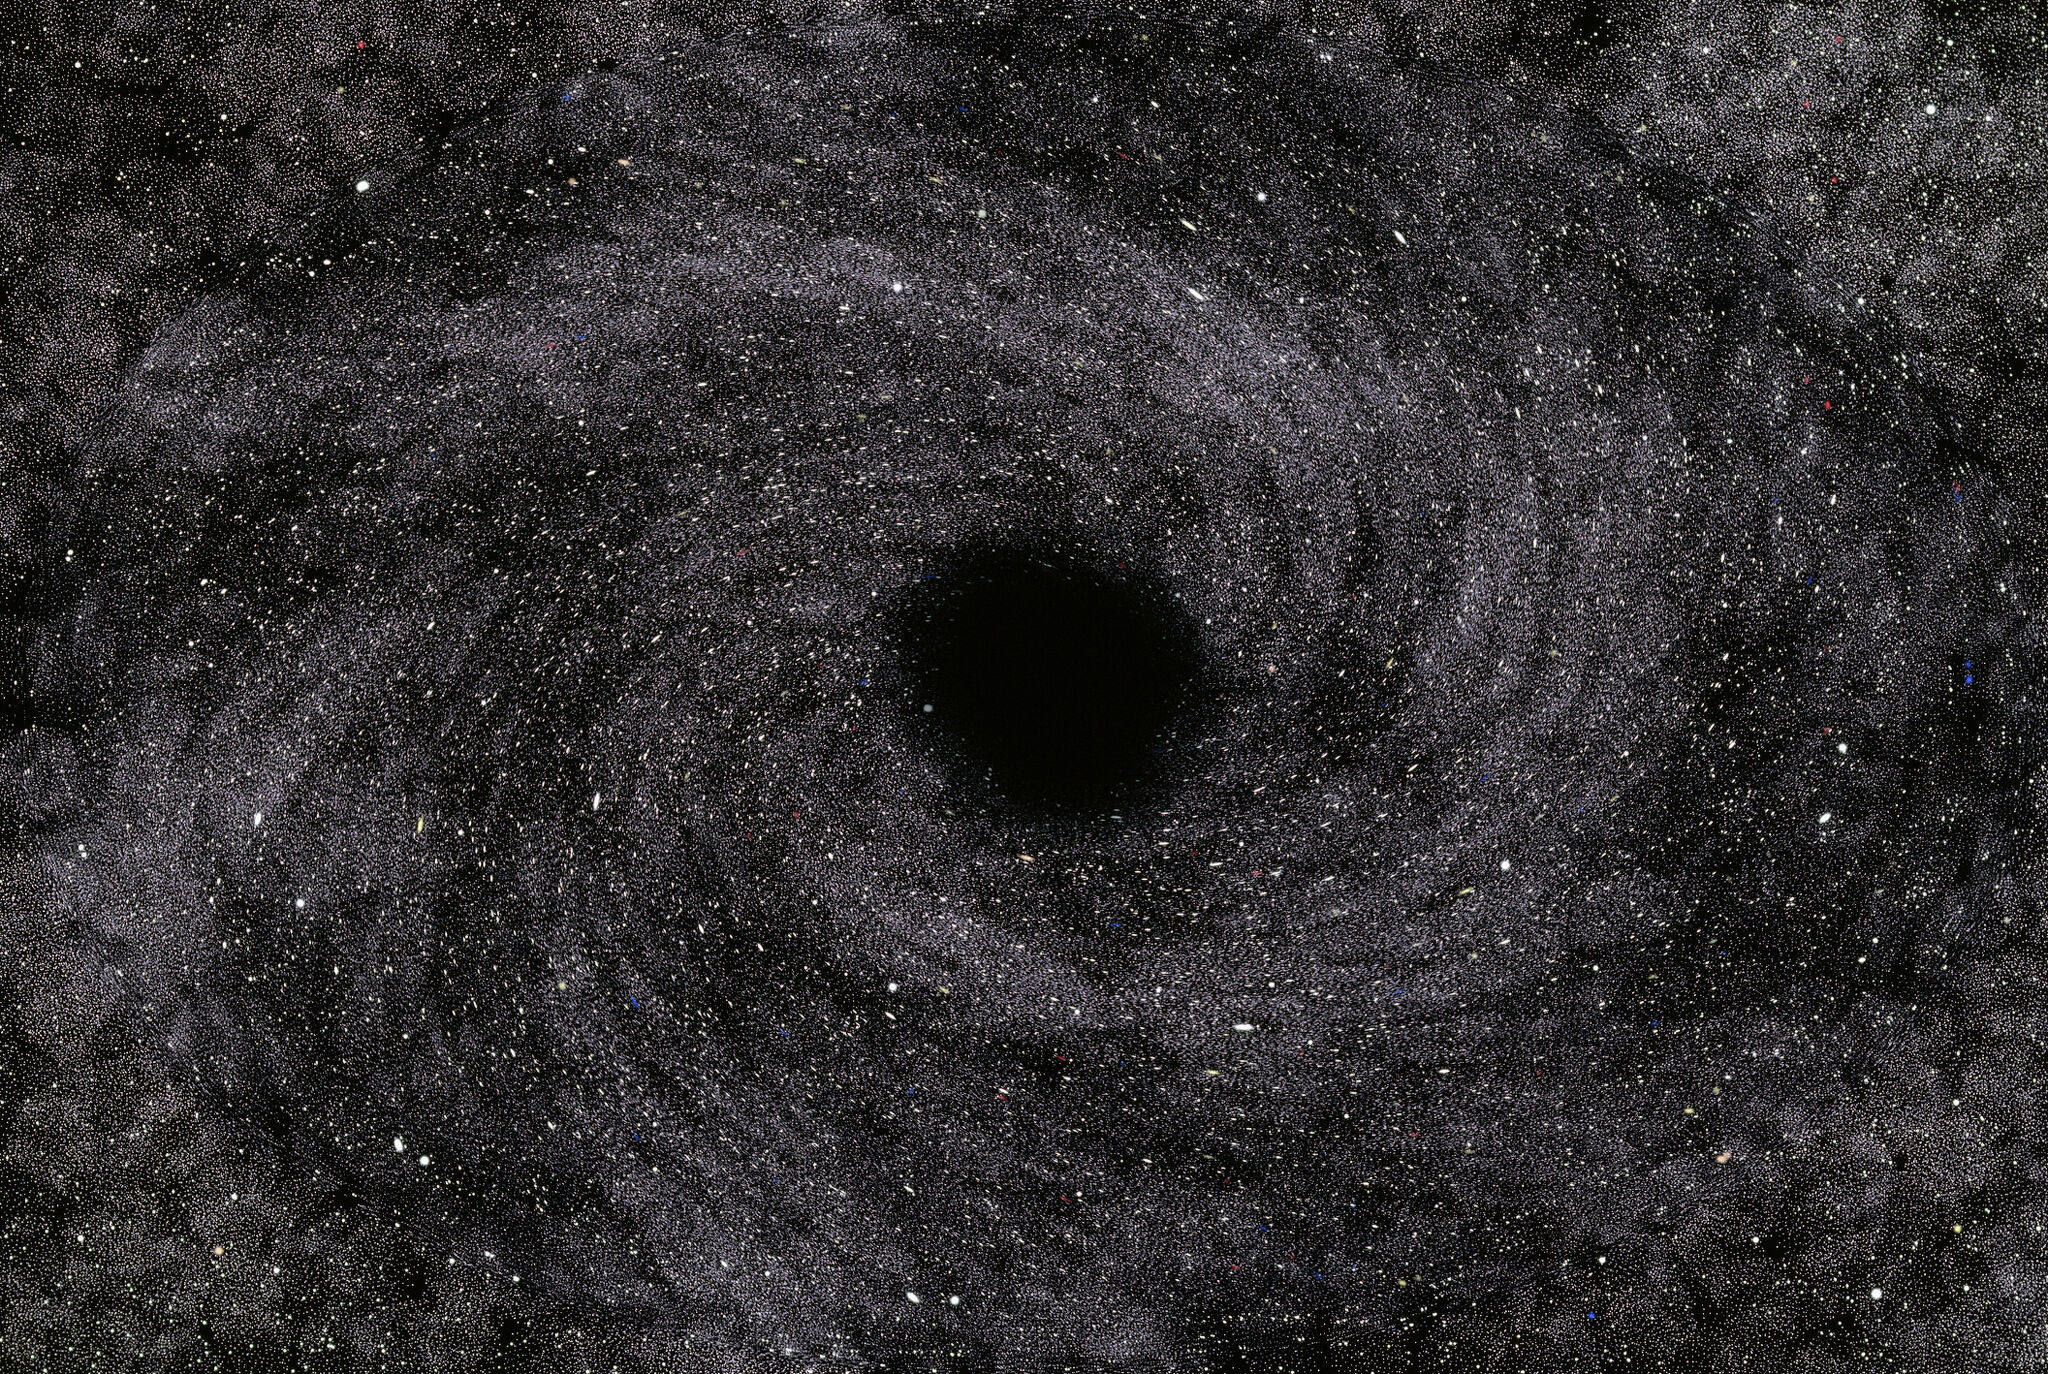 لاحظ باحثو جامعة كاليفورنيا في سانتا كروز وجود ثقب أسود يبتلع نجمًا